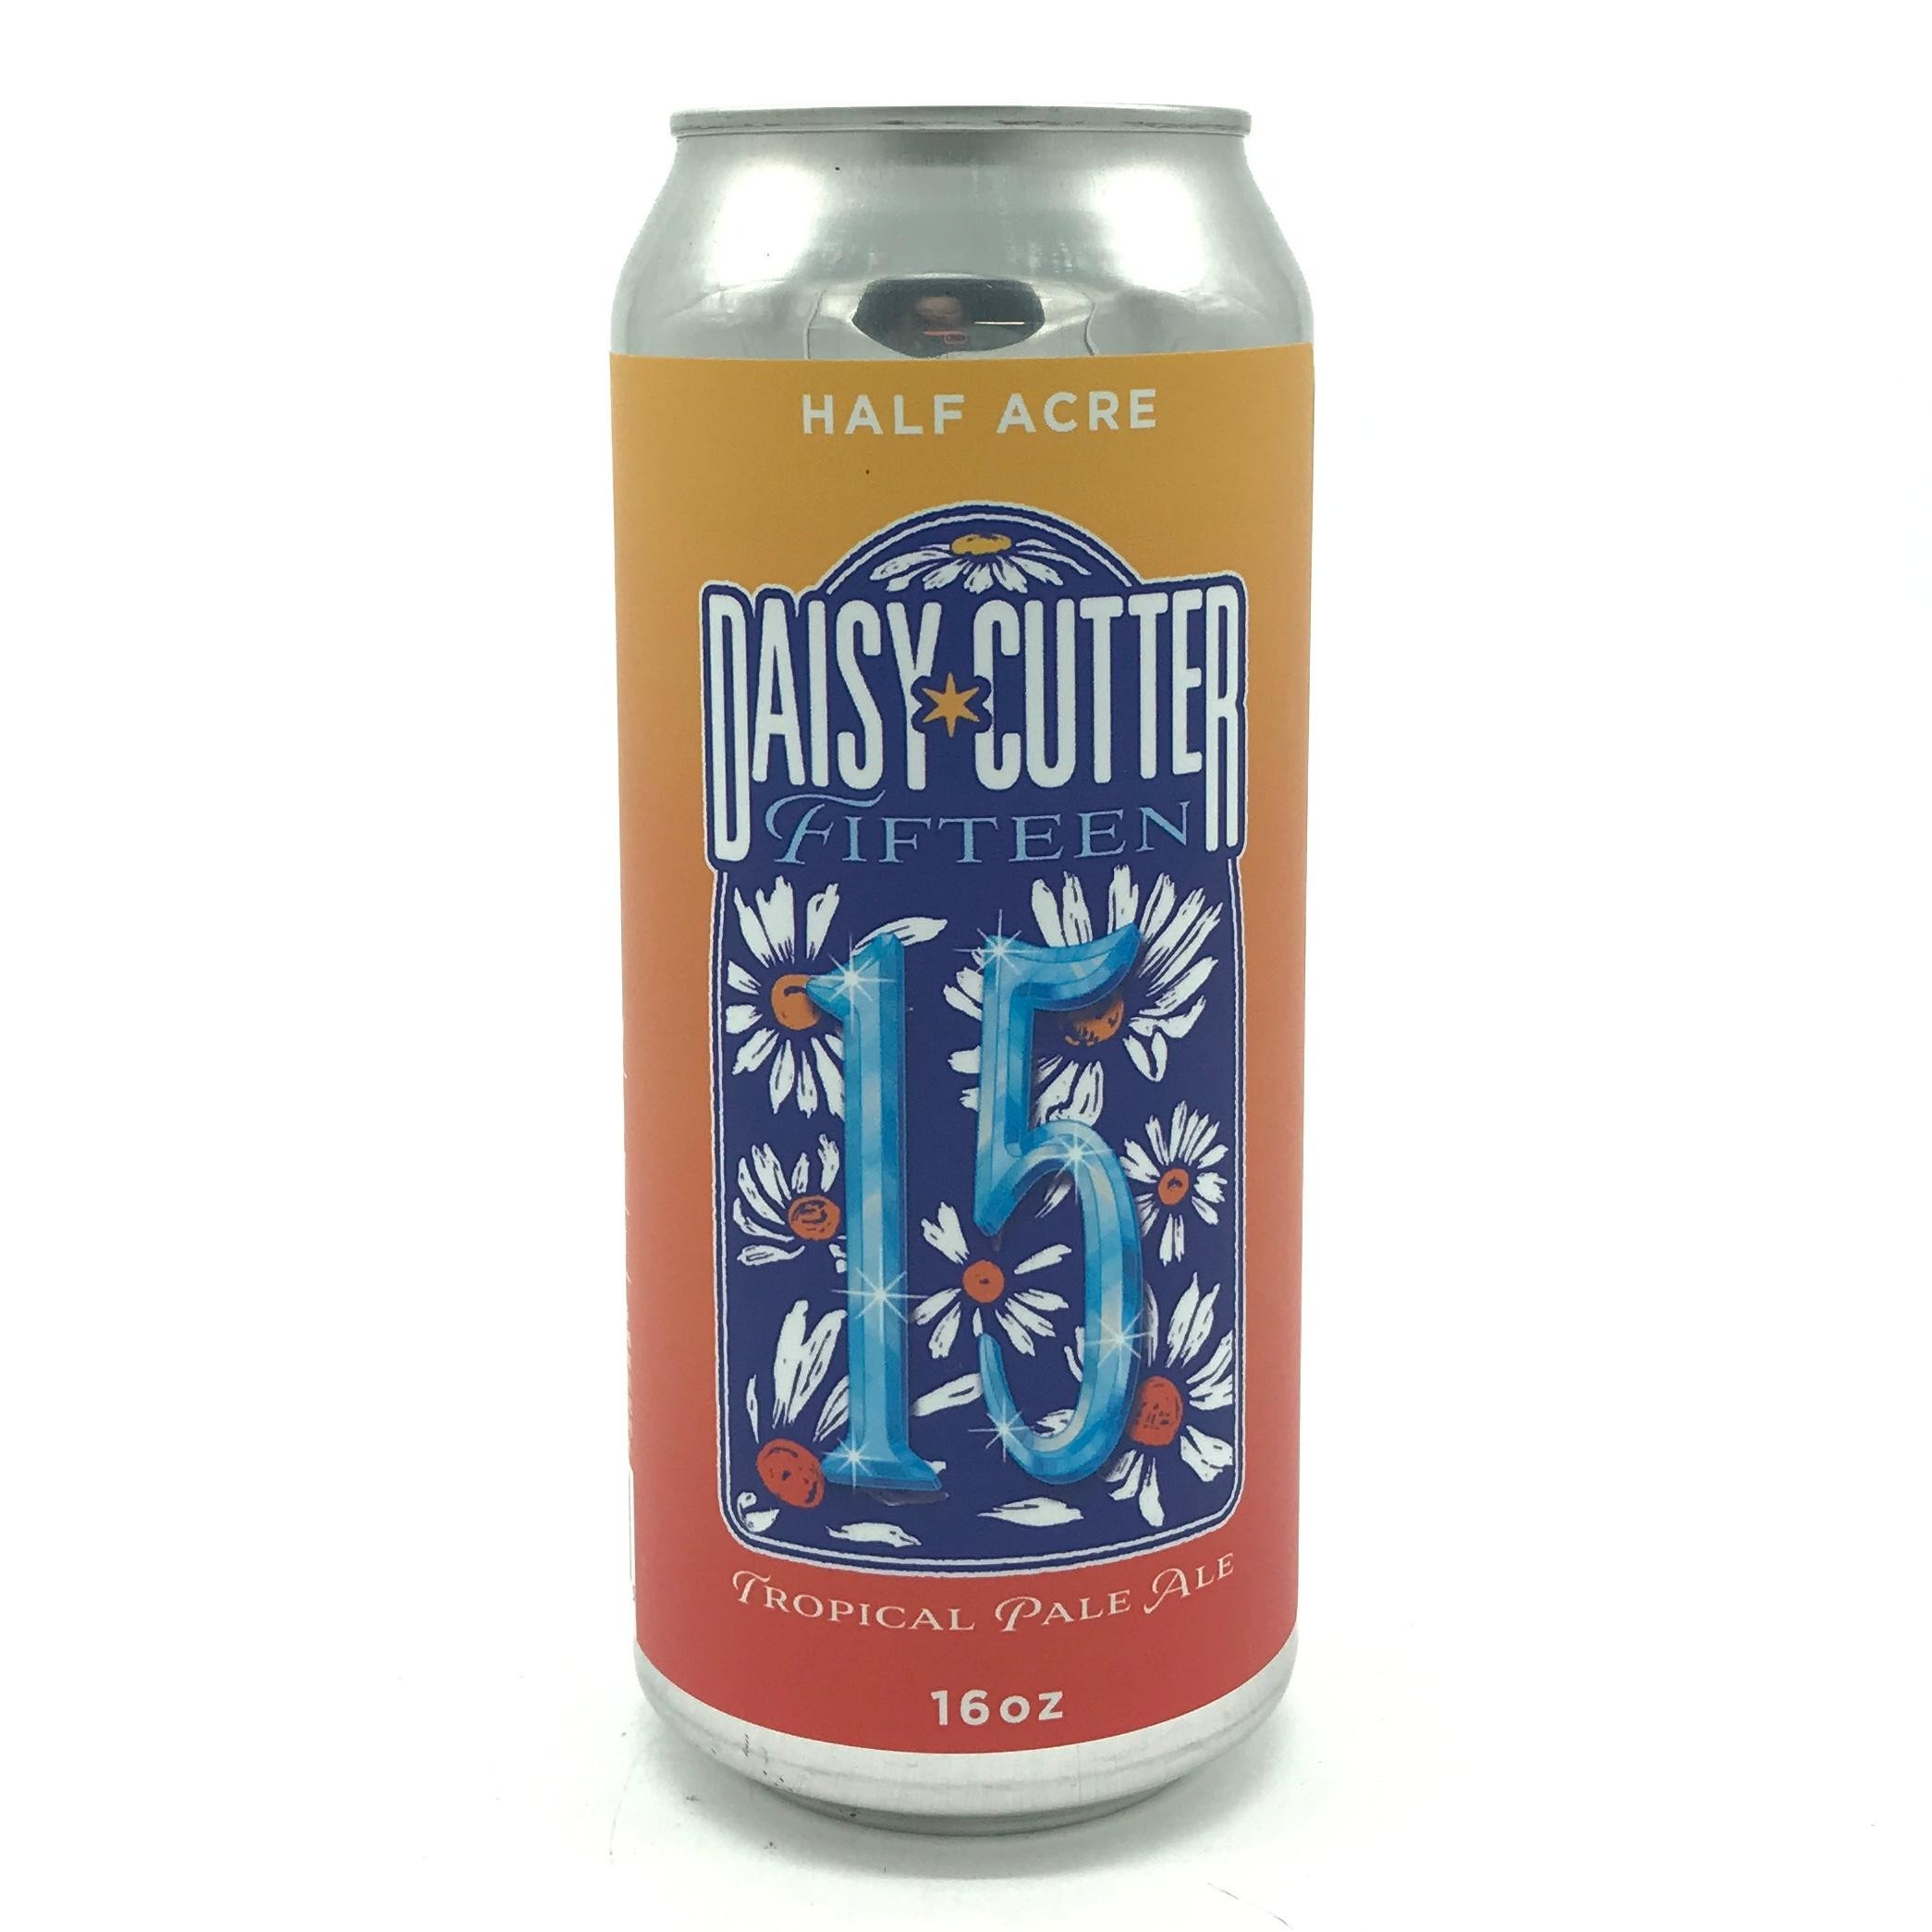 Half Acre - Daisy Cutter Fifteen